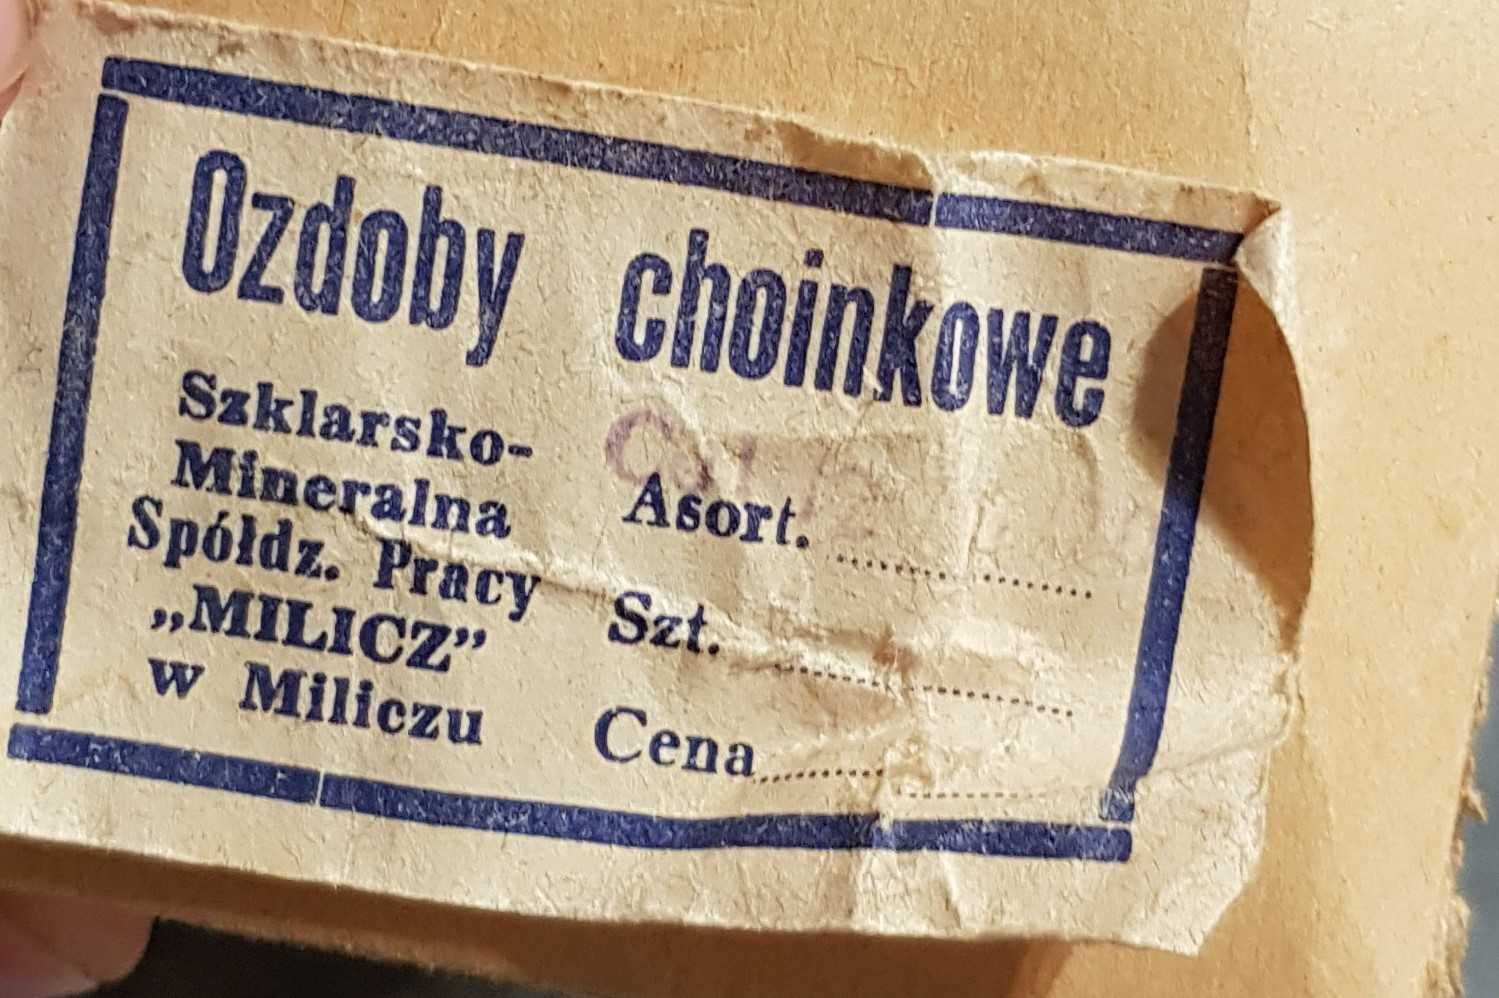 Ogromny czub choinkowy, Polska, lata 70. XX w.